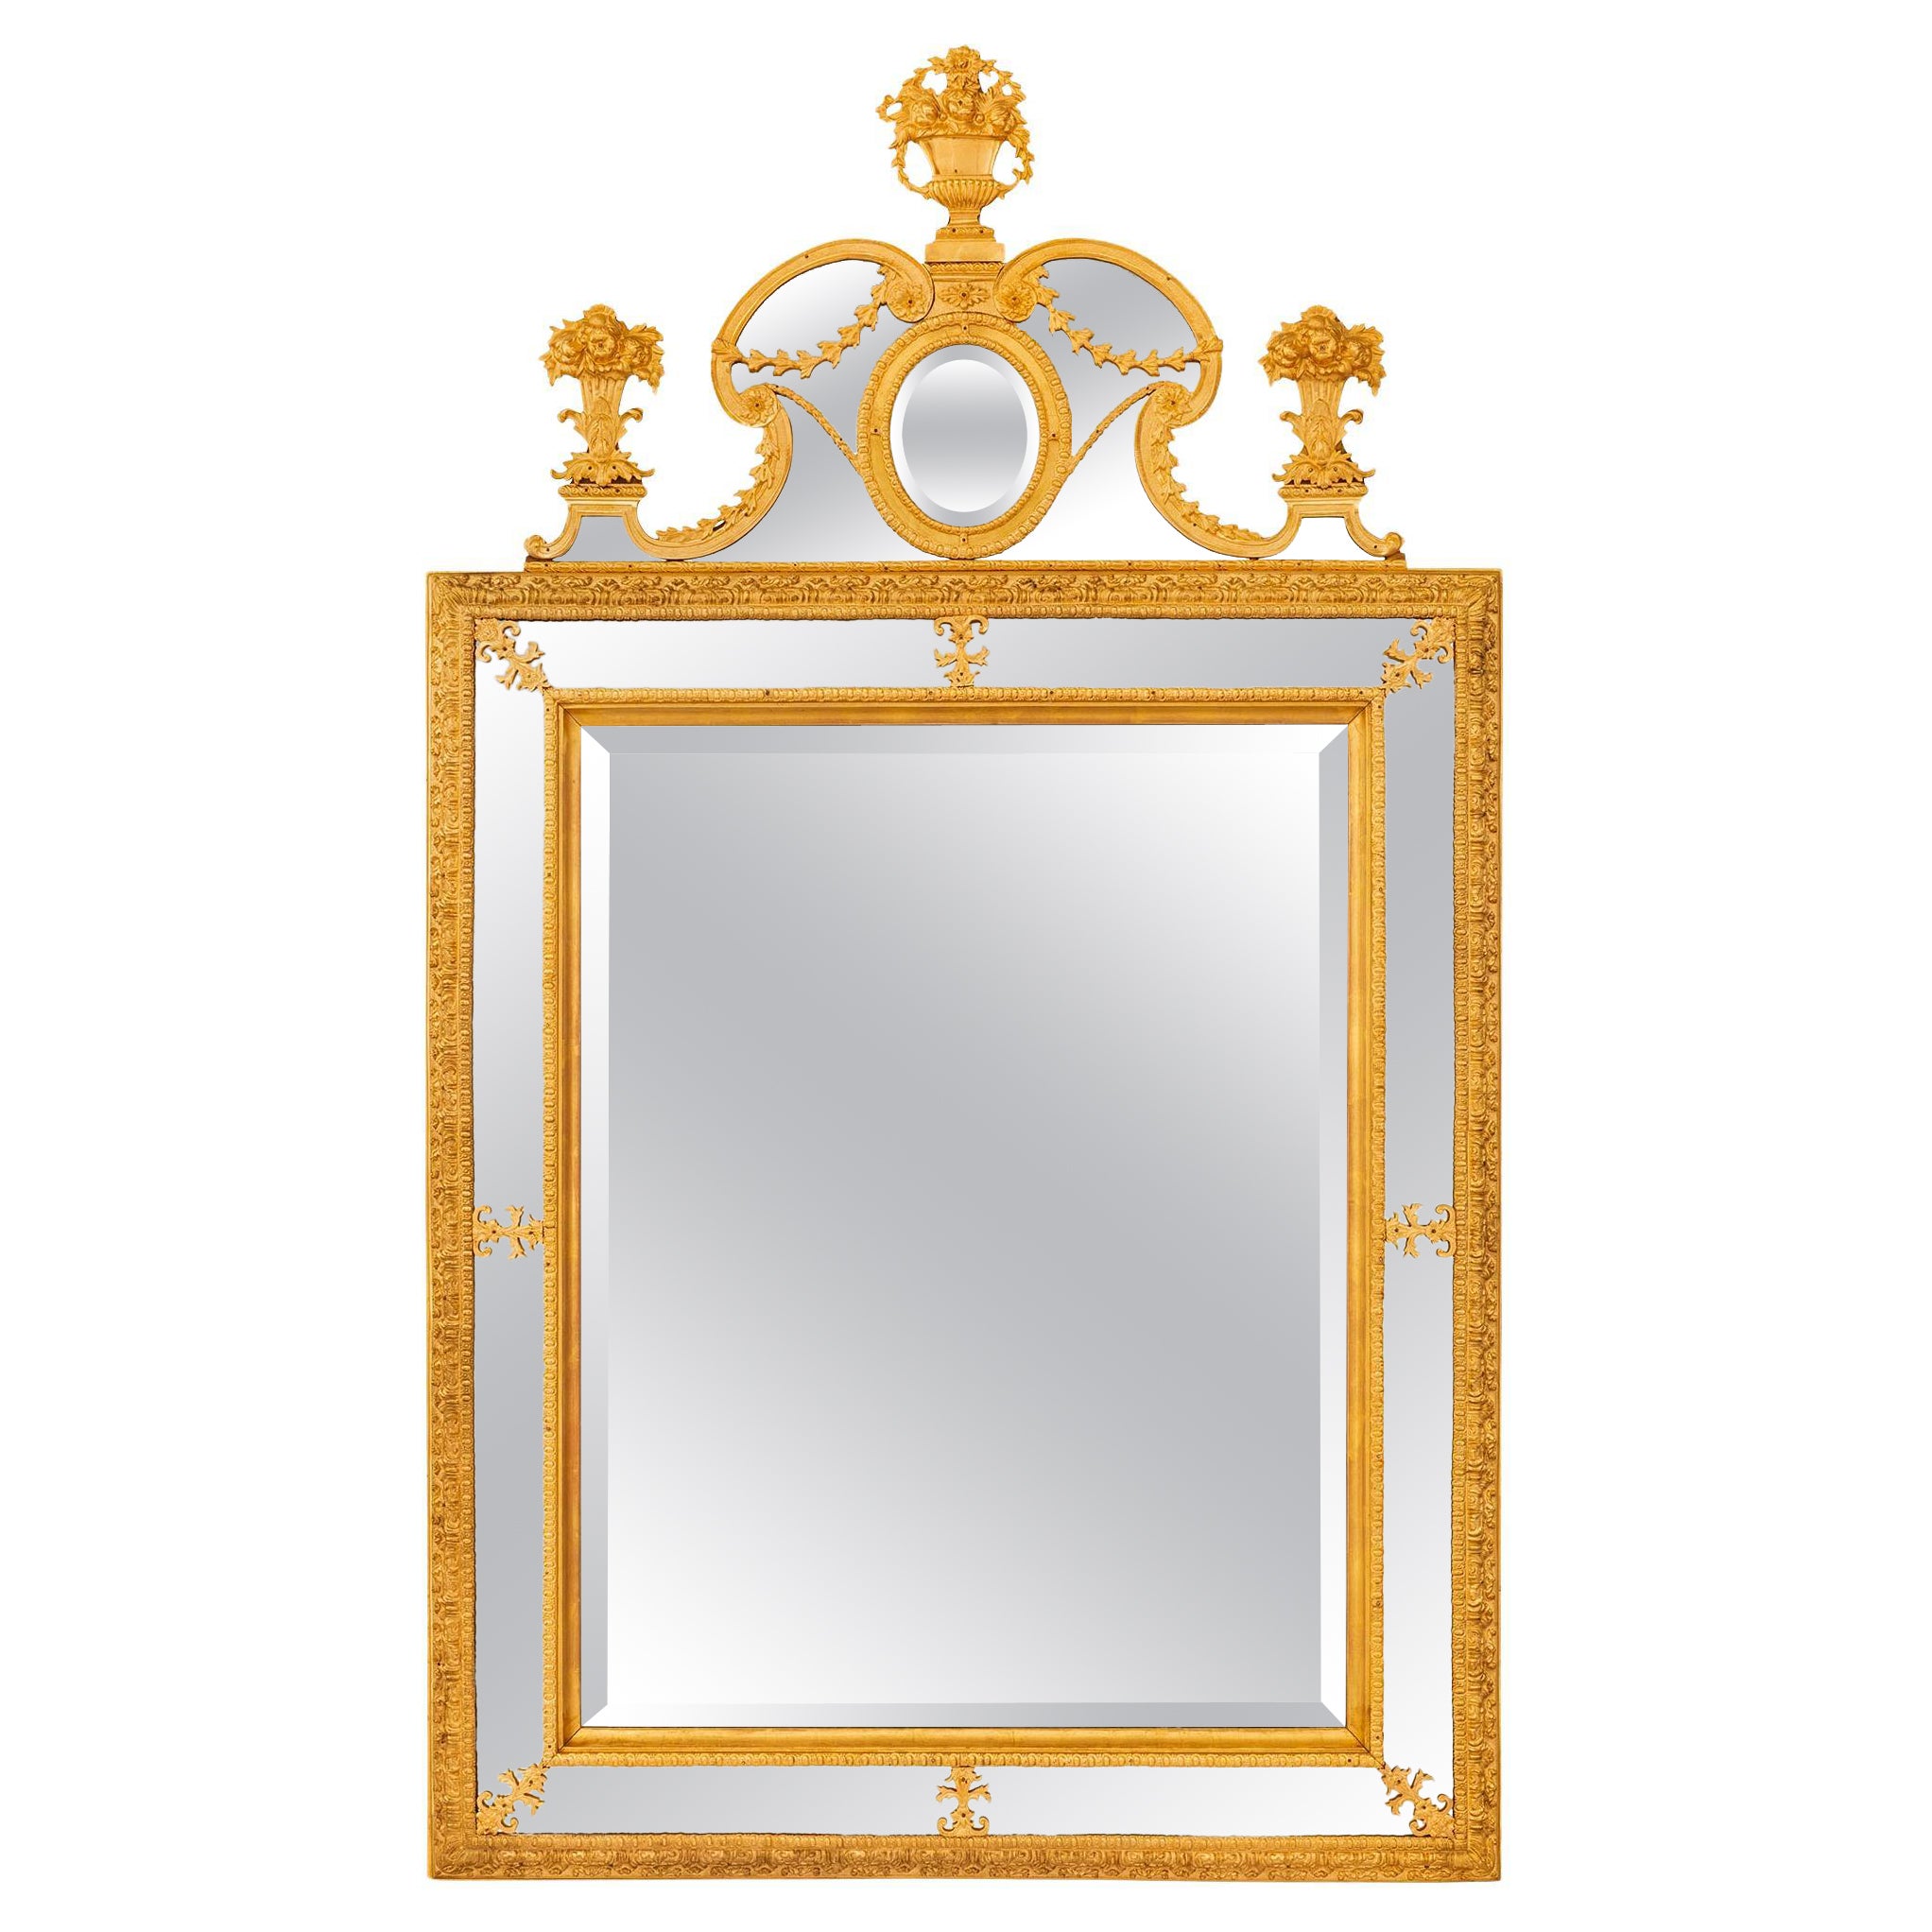 Miroir néo-classique suédois du début du 19e siècle. Miroir en bronze doré